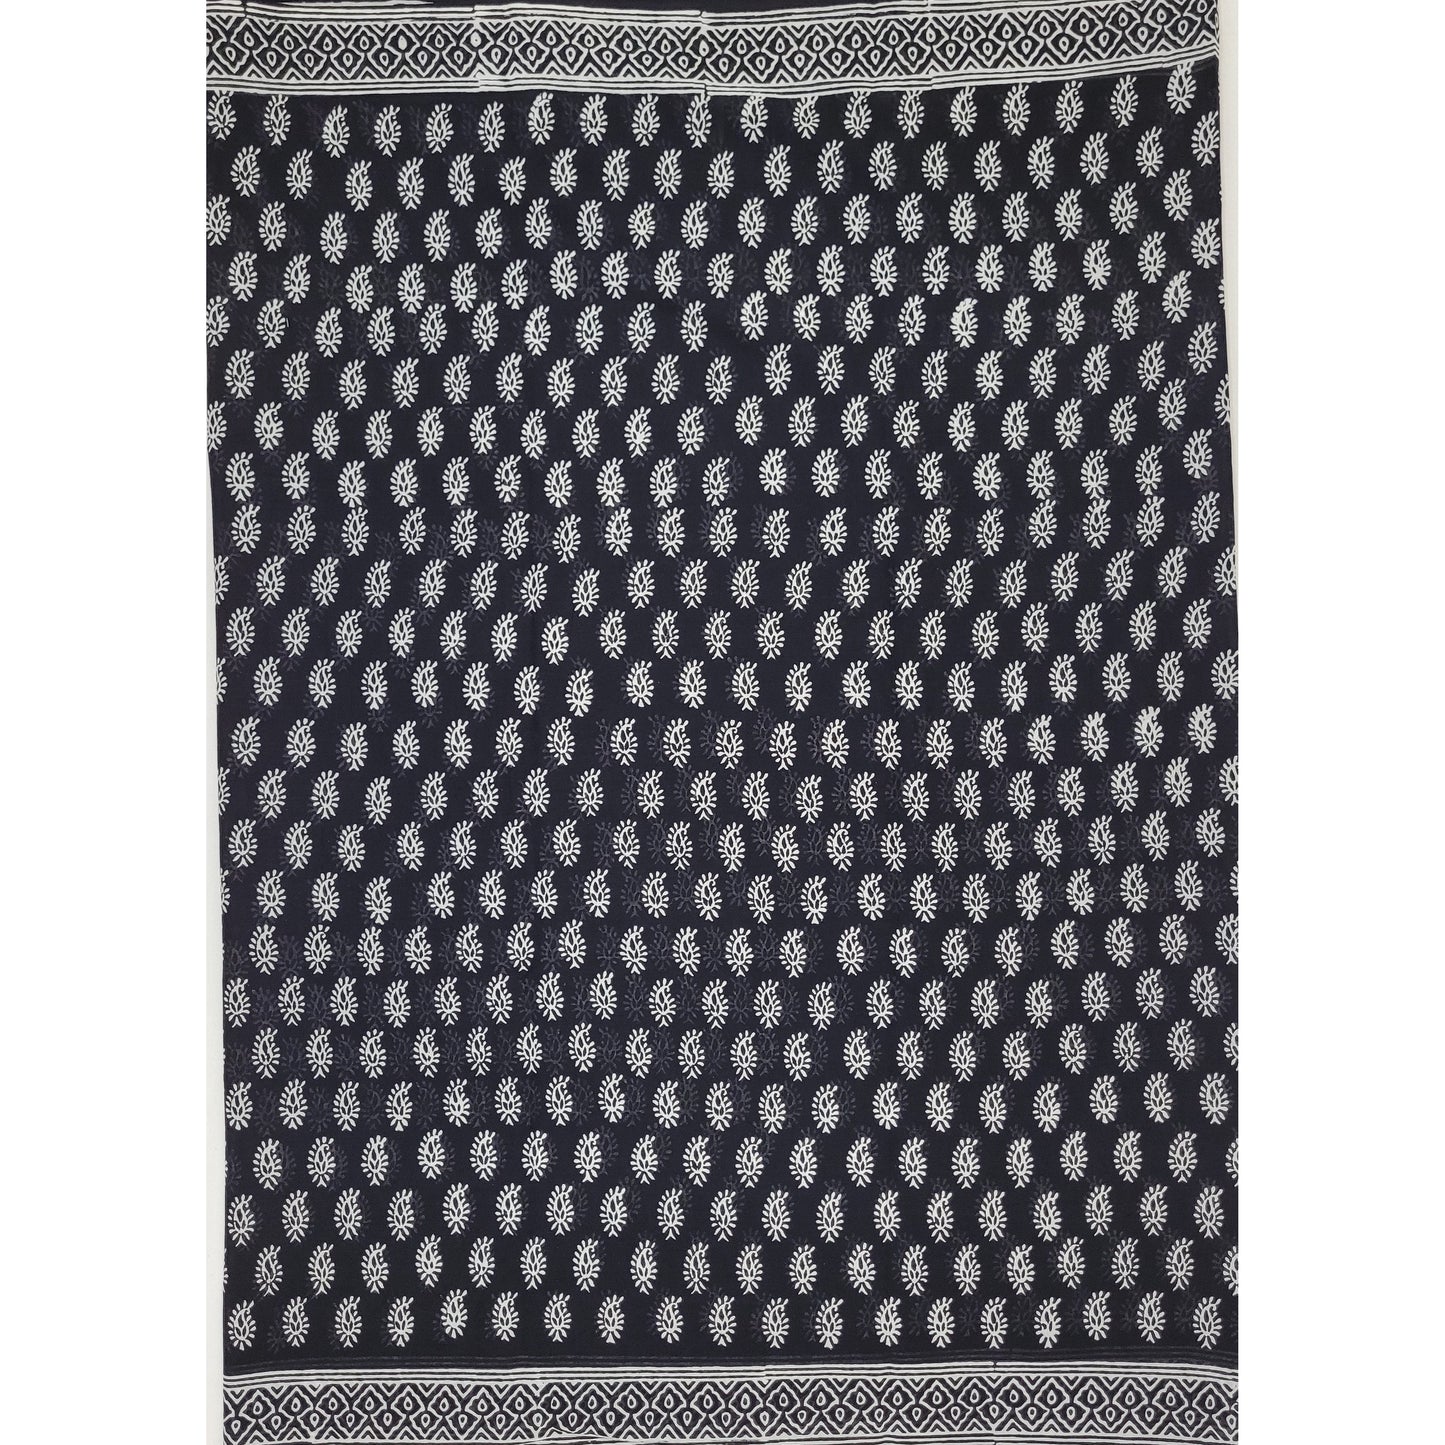 Hand Block Printed Bagru Black color mul mul cotton saree with printed blouse - Vinshika